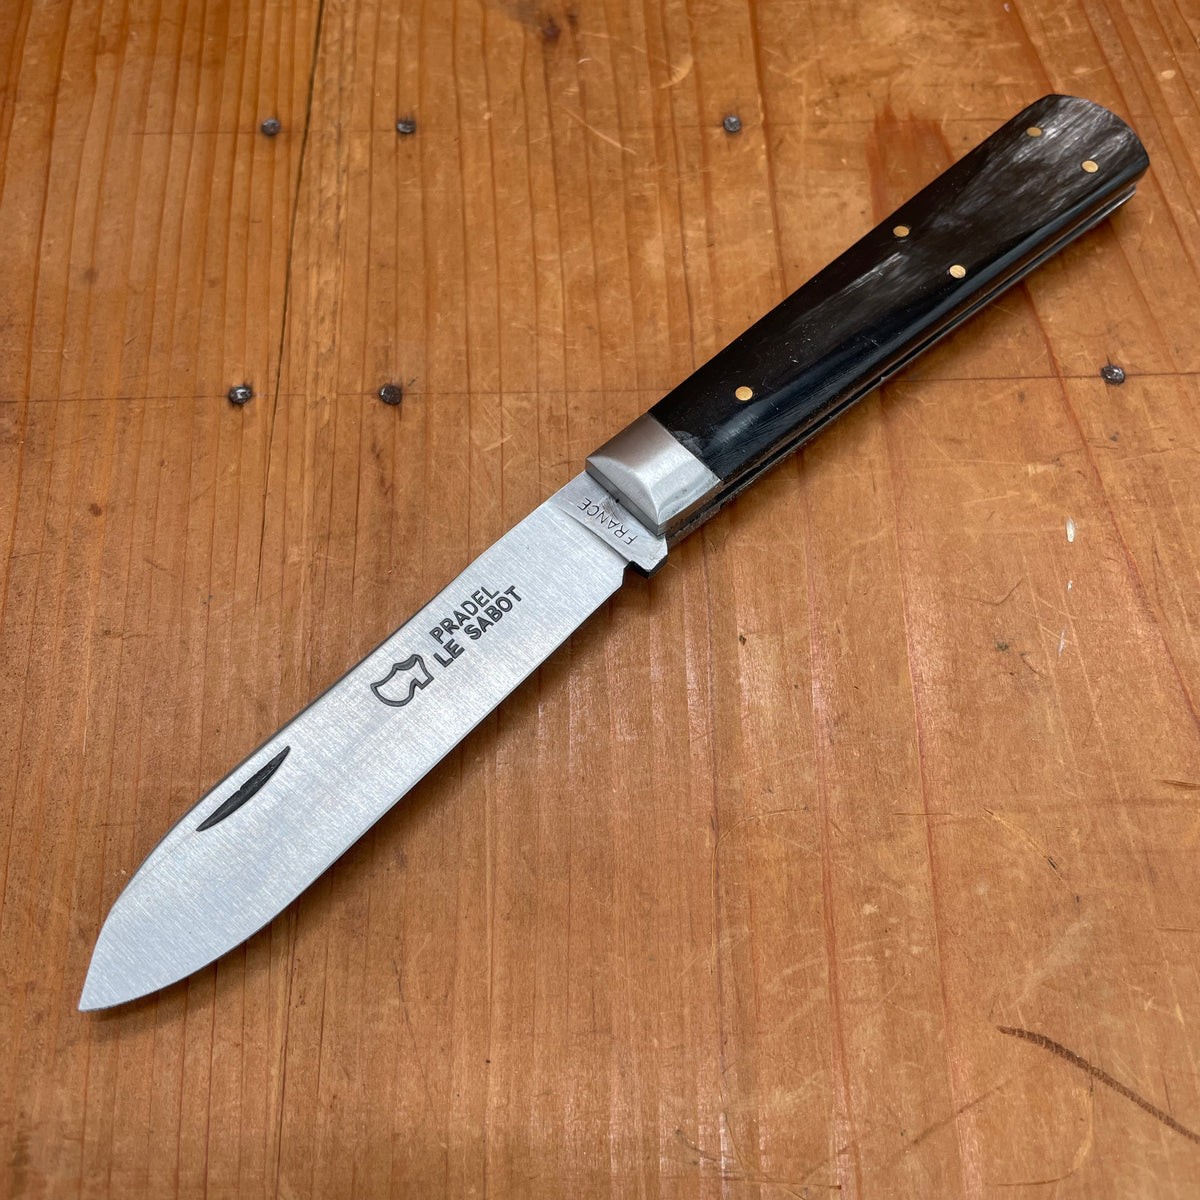 Pocket knife Le Pradel Ebony wood